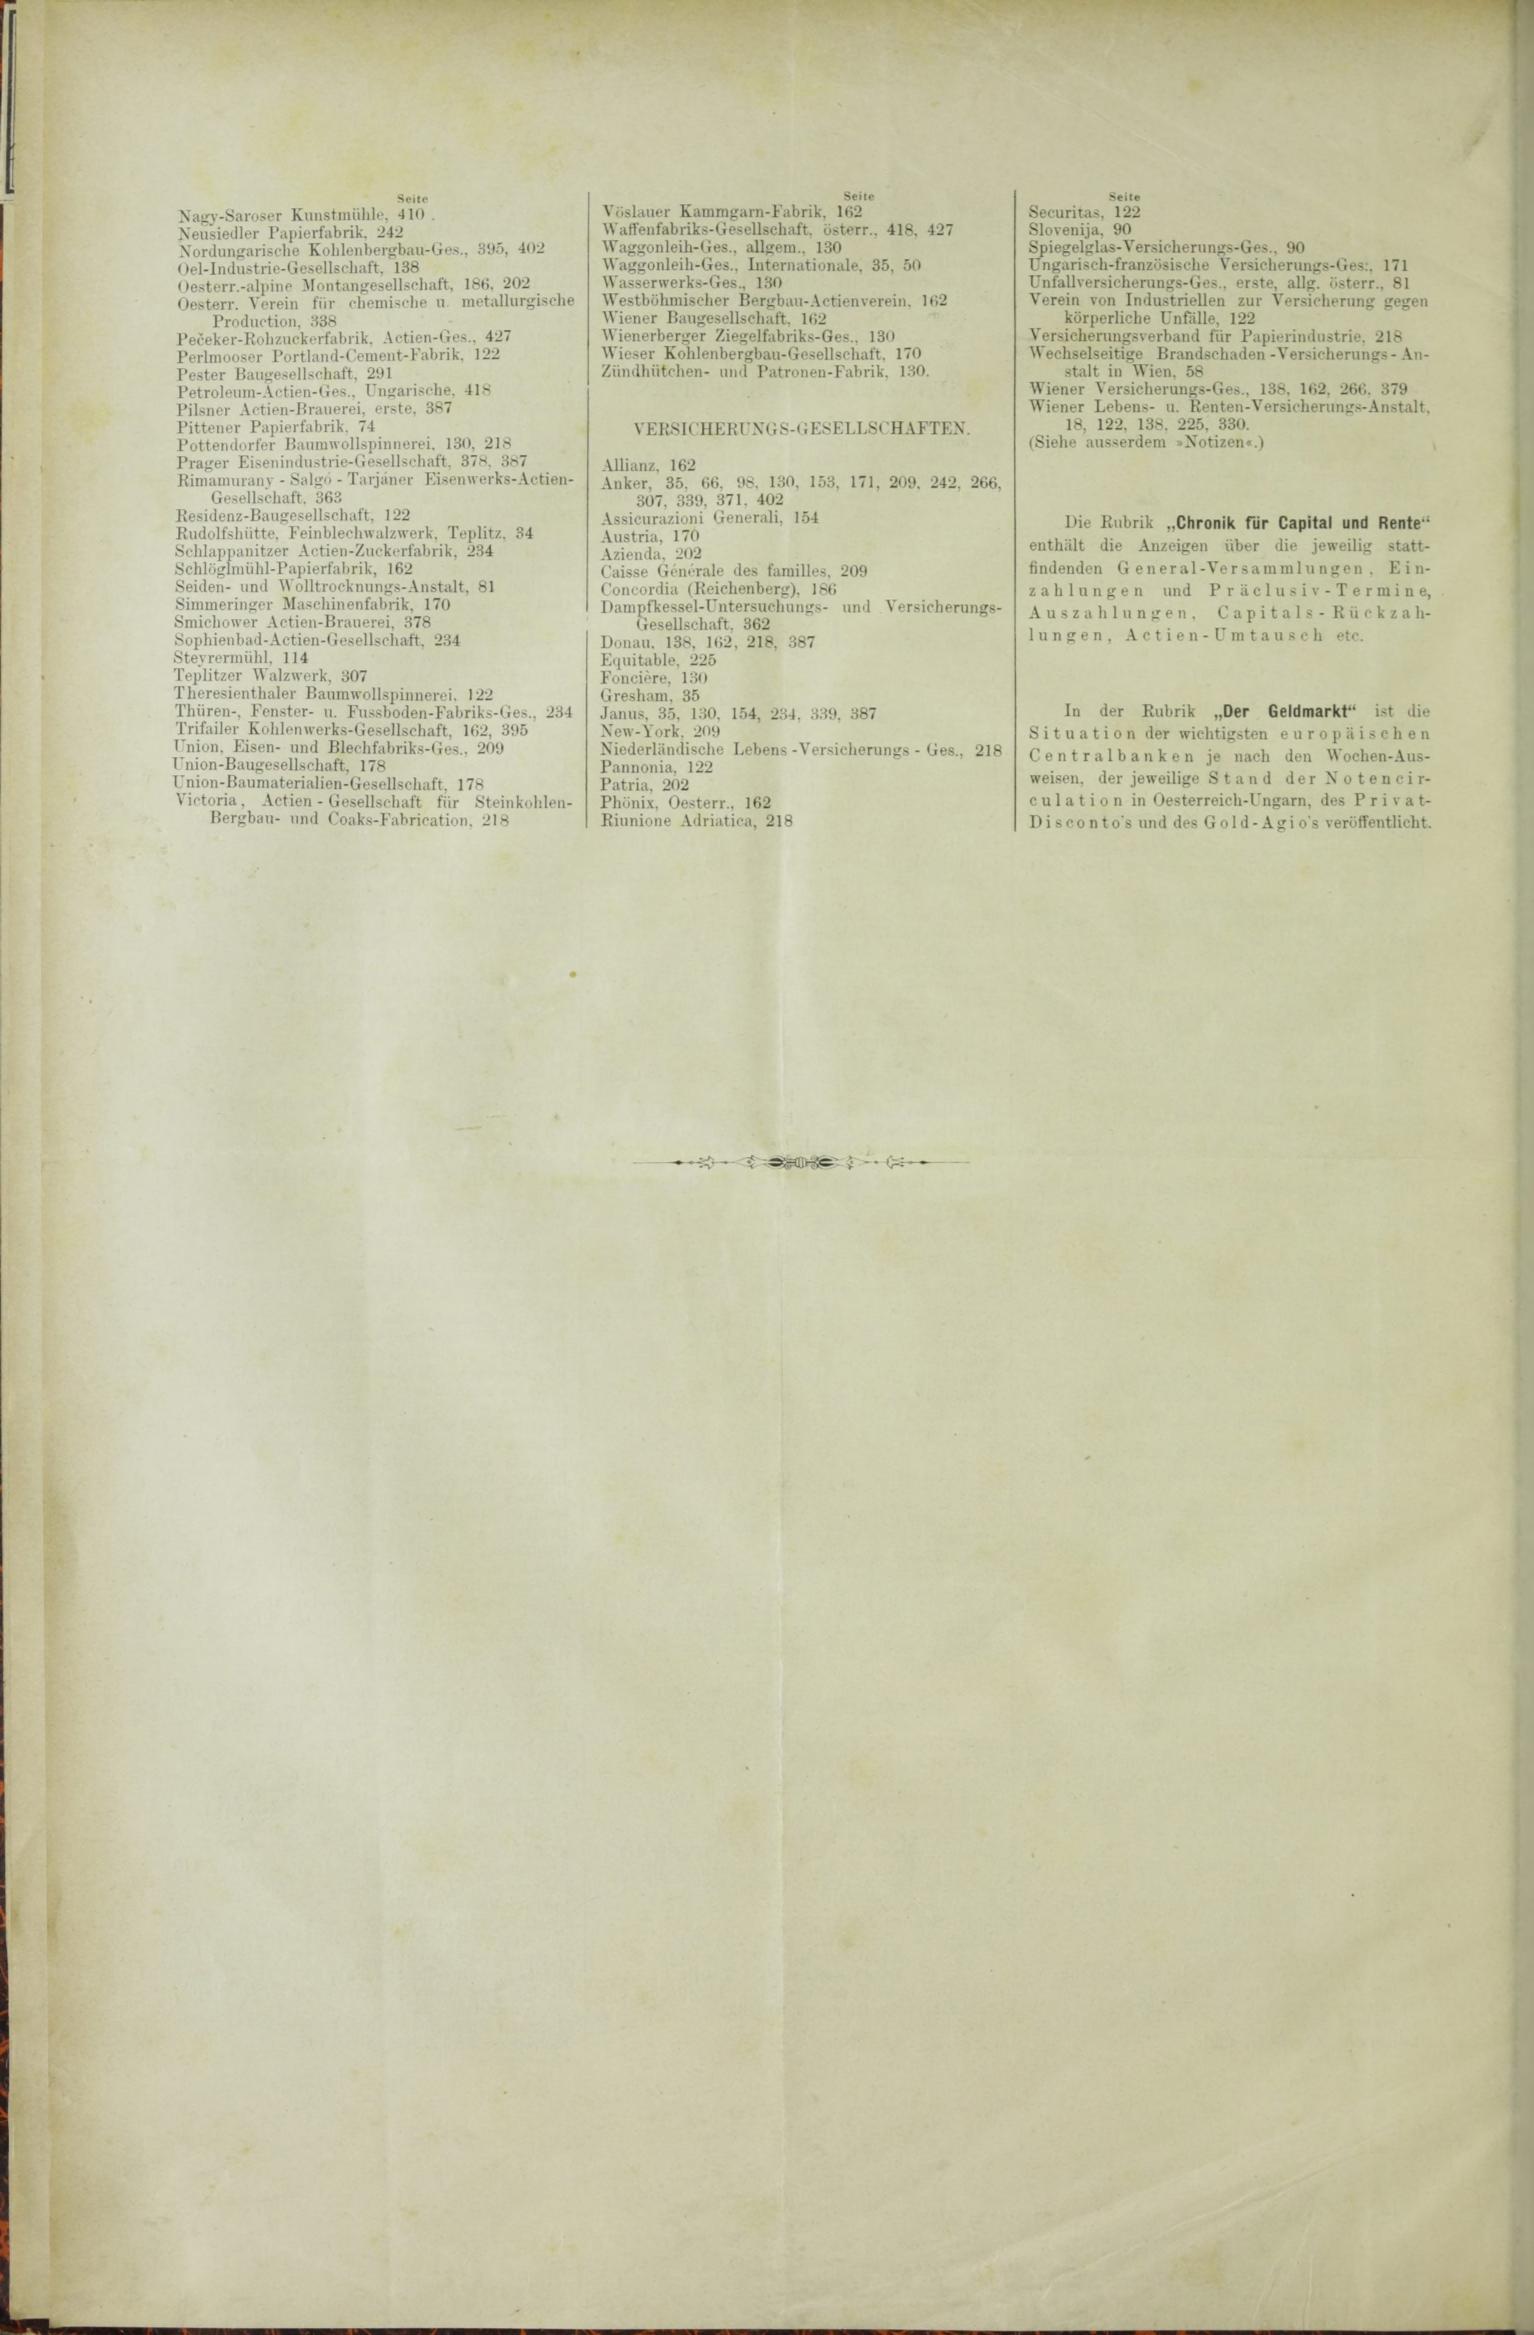 Der Tresor 19.03.1885 - Seite 12